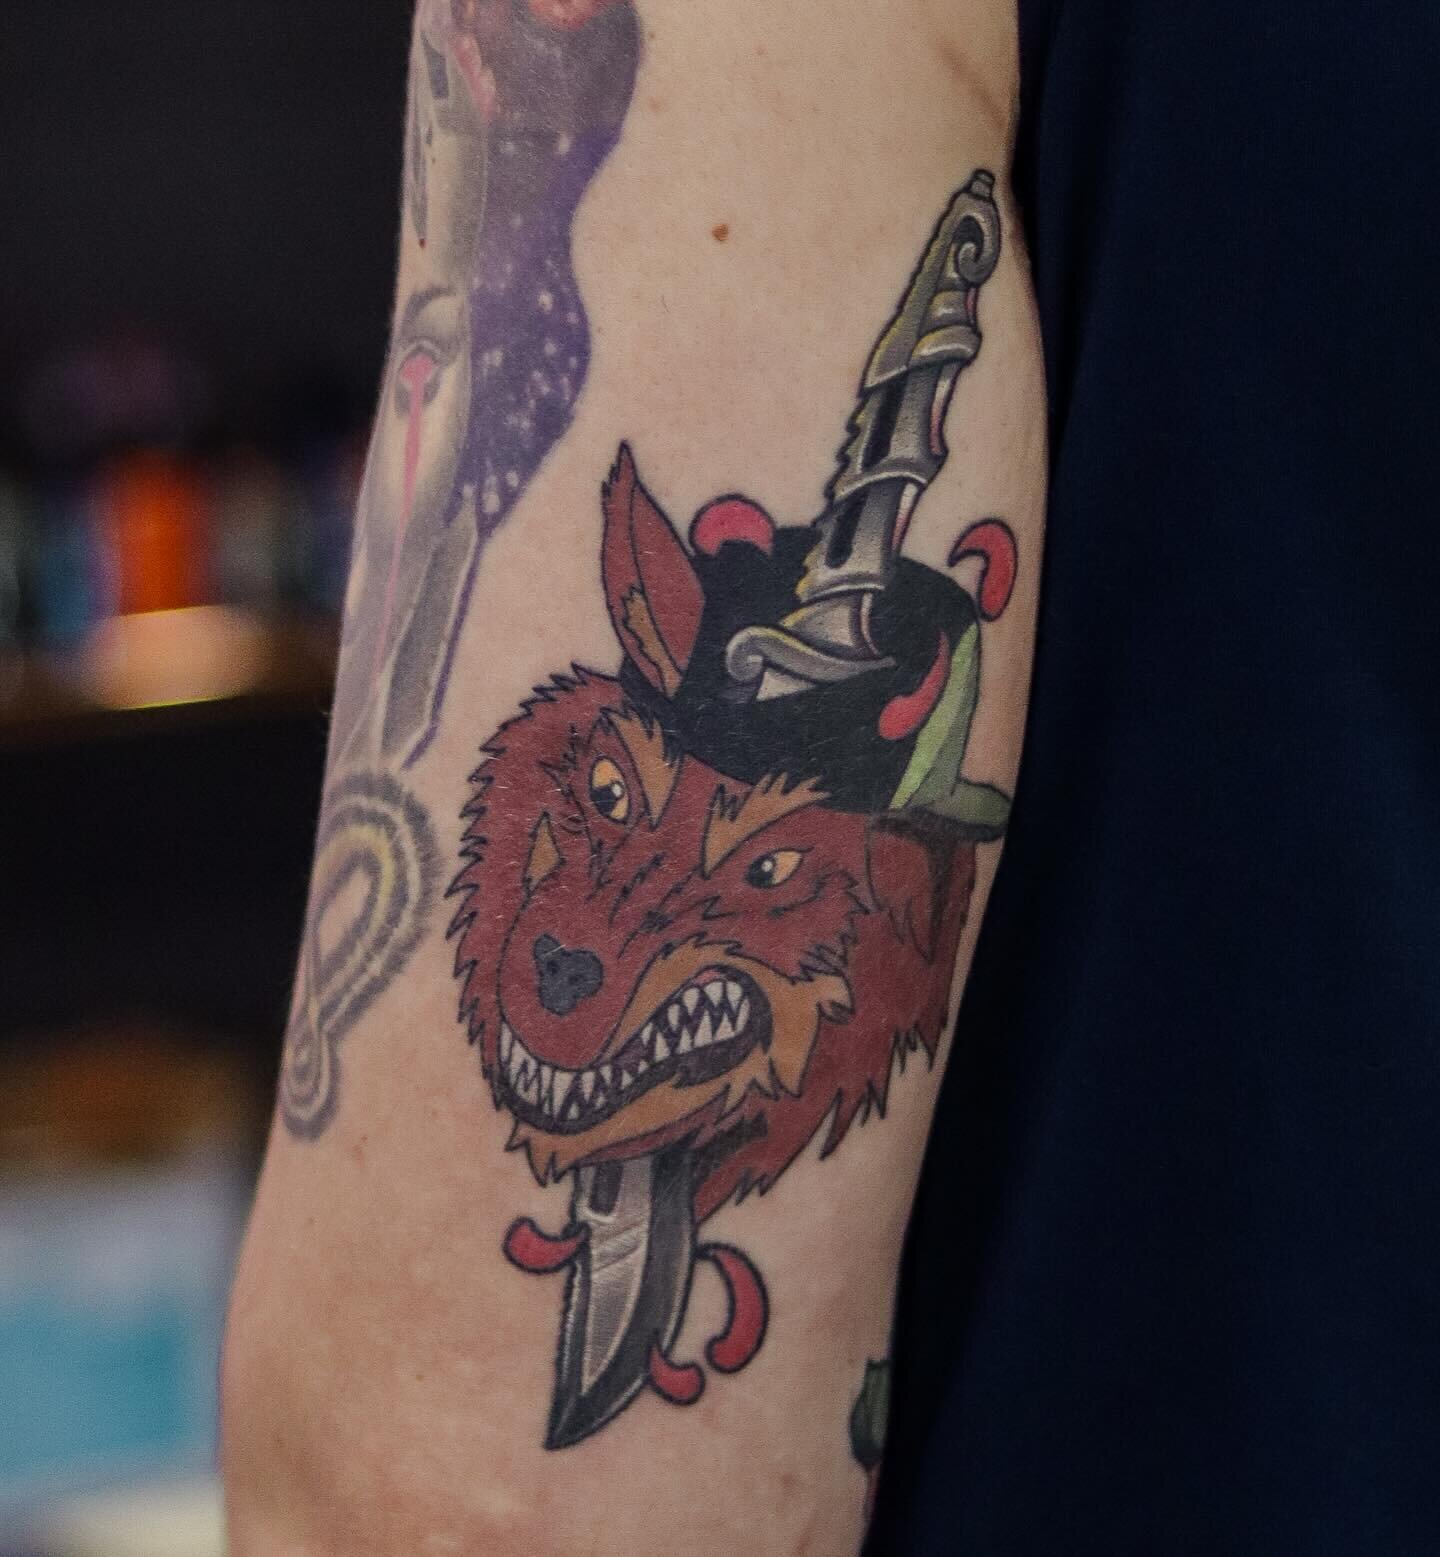 Healed sick wolf tattoo 🤙
.
.
.
.
.
.
.
.
#neotraditional #neotrad #neotraditionaltattoo
#animaltattoo #tattoos #tattooart  #tattoosofinstagram #tattooartwork #tattooinstagram #tattooarts #tattoodesign #tattooideas #tattooidea #tattoostudio #tattoou